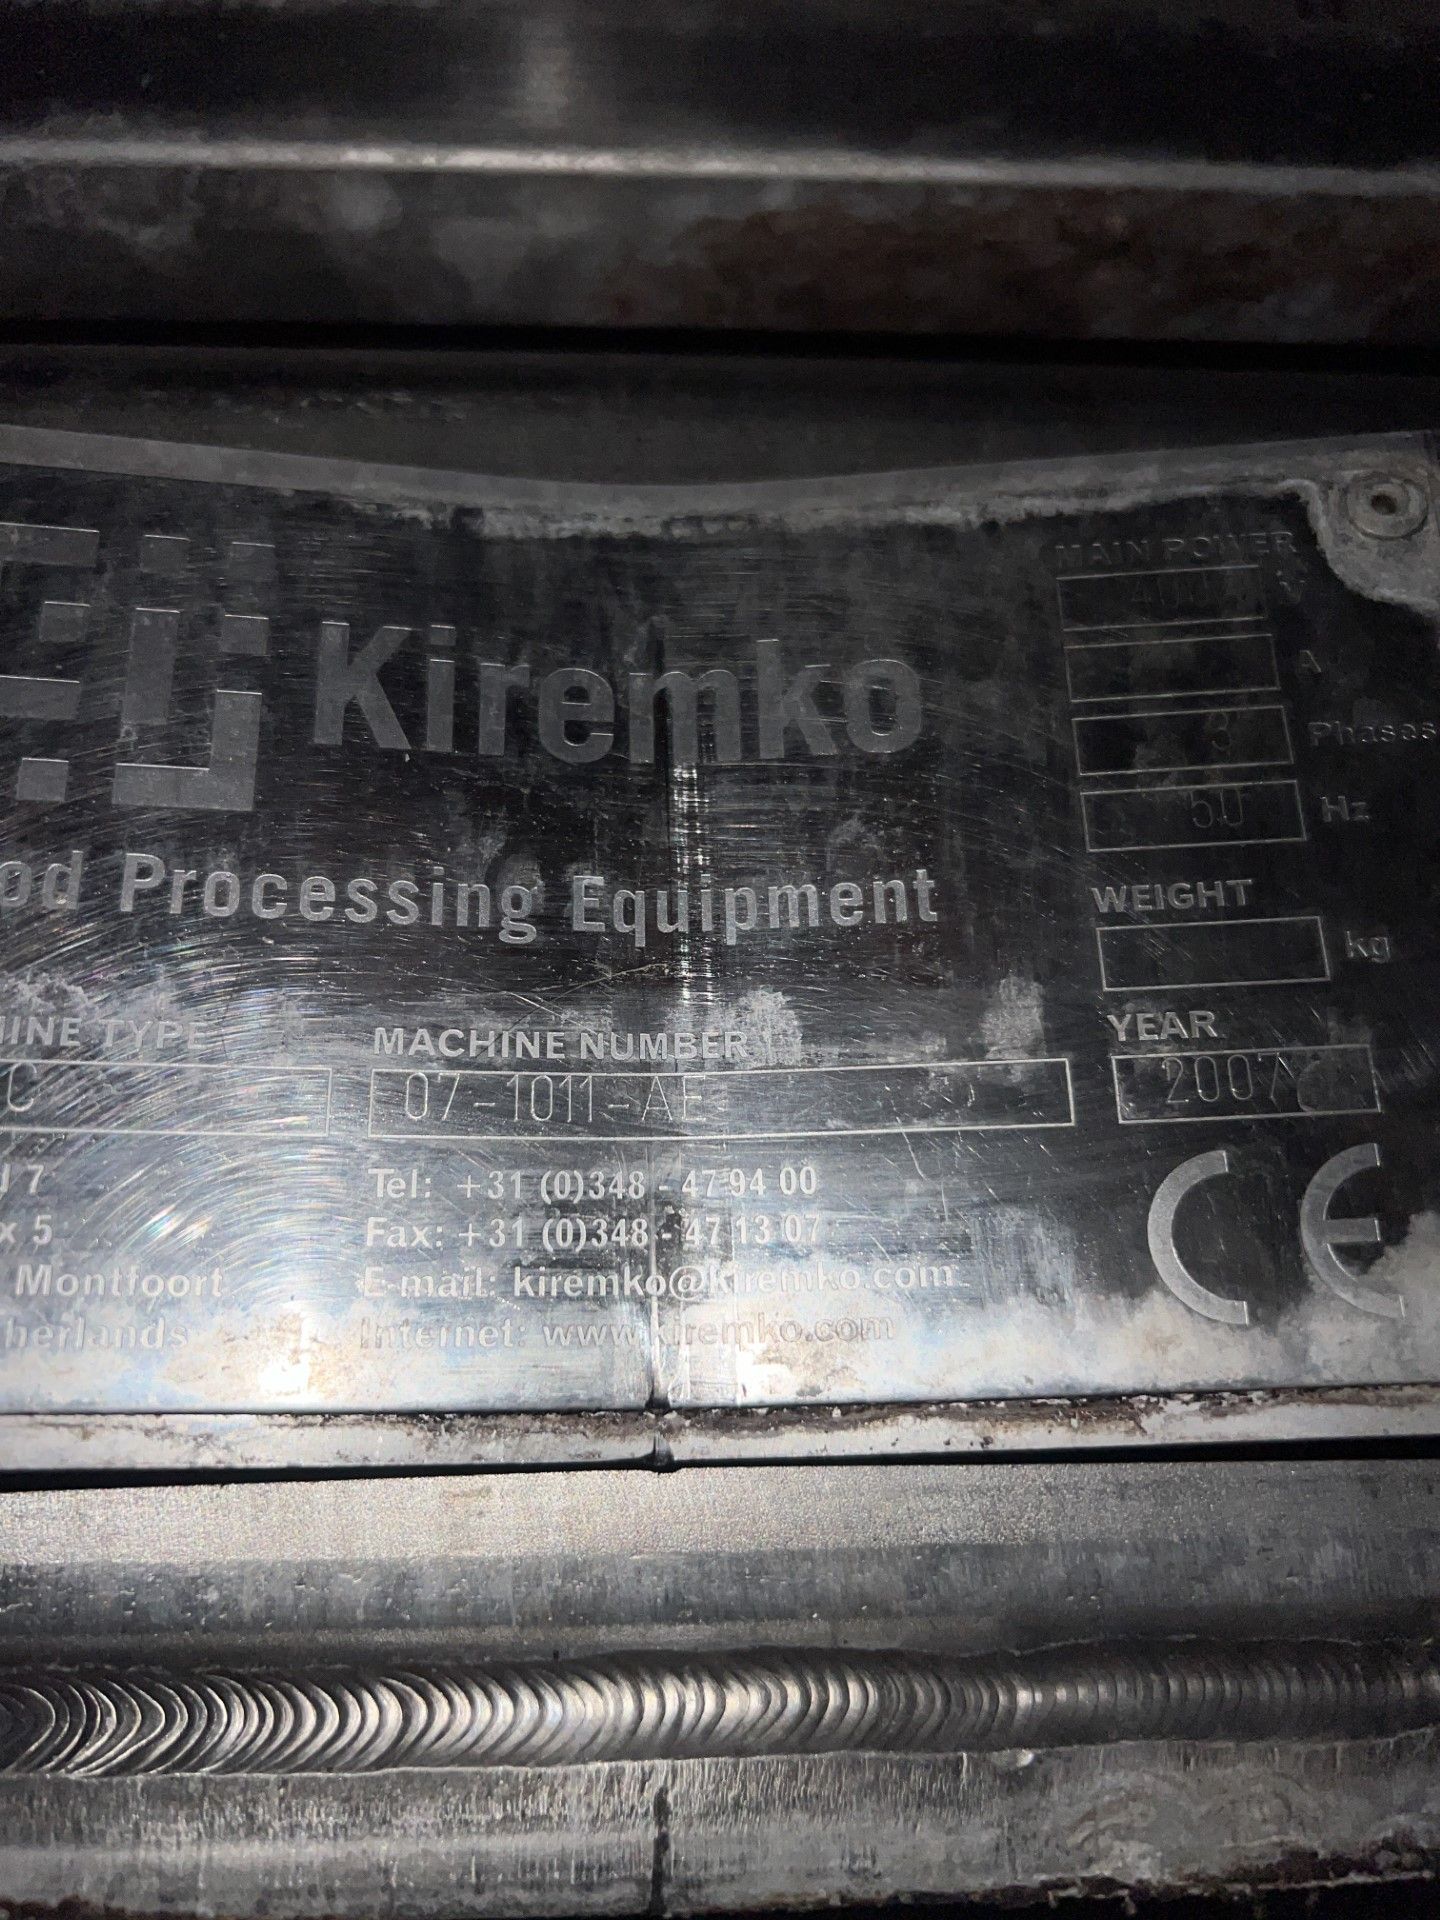 Kirmeko steam cooking line - Image 20 of 23